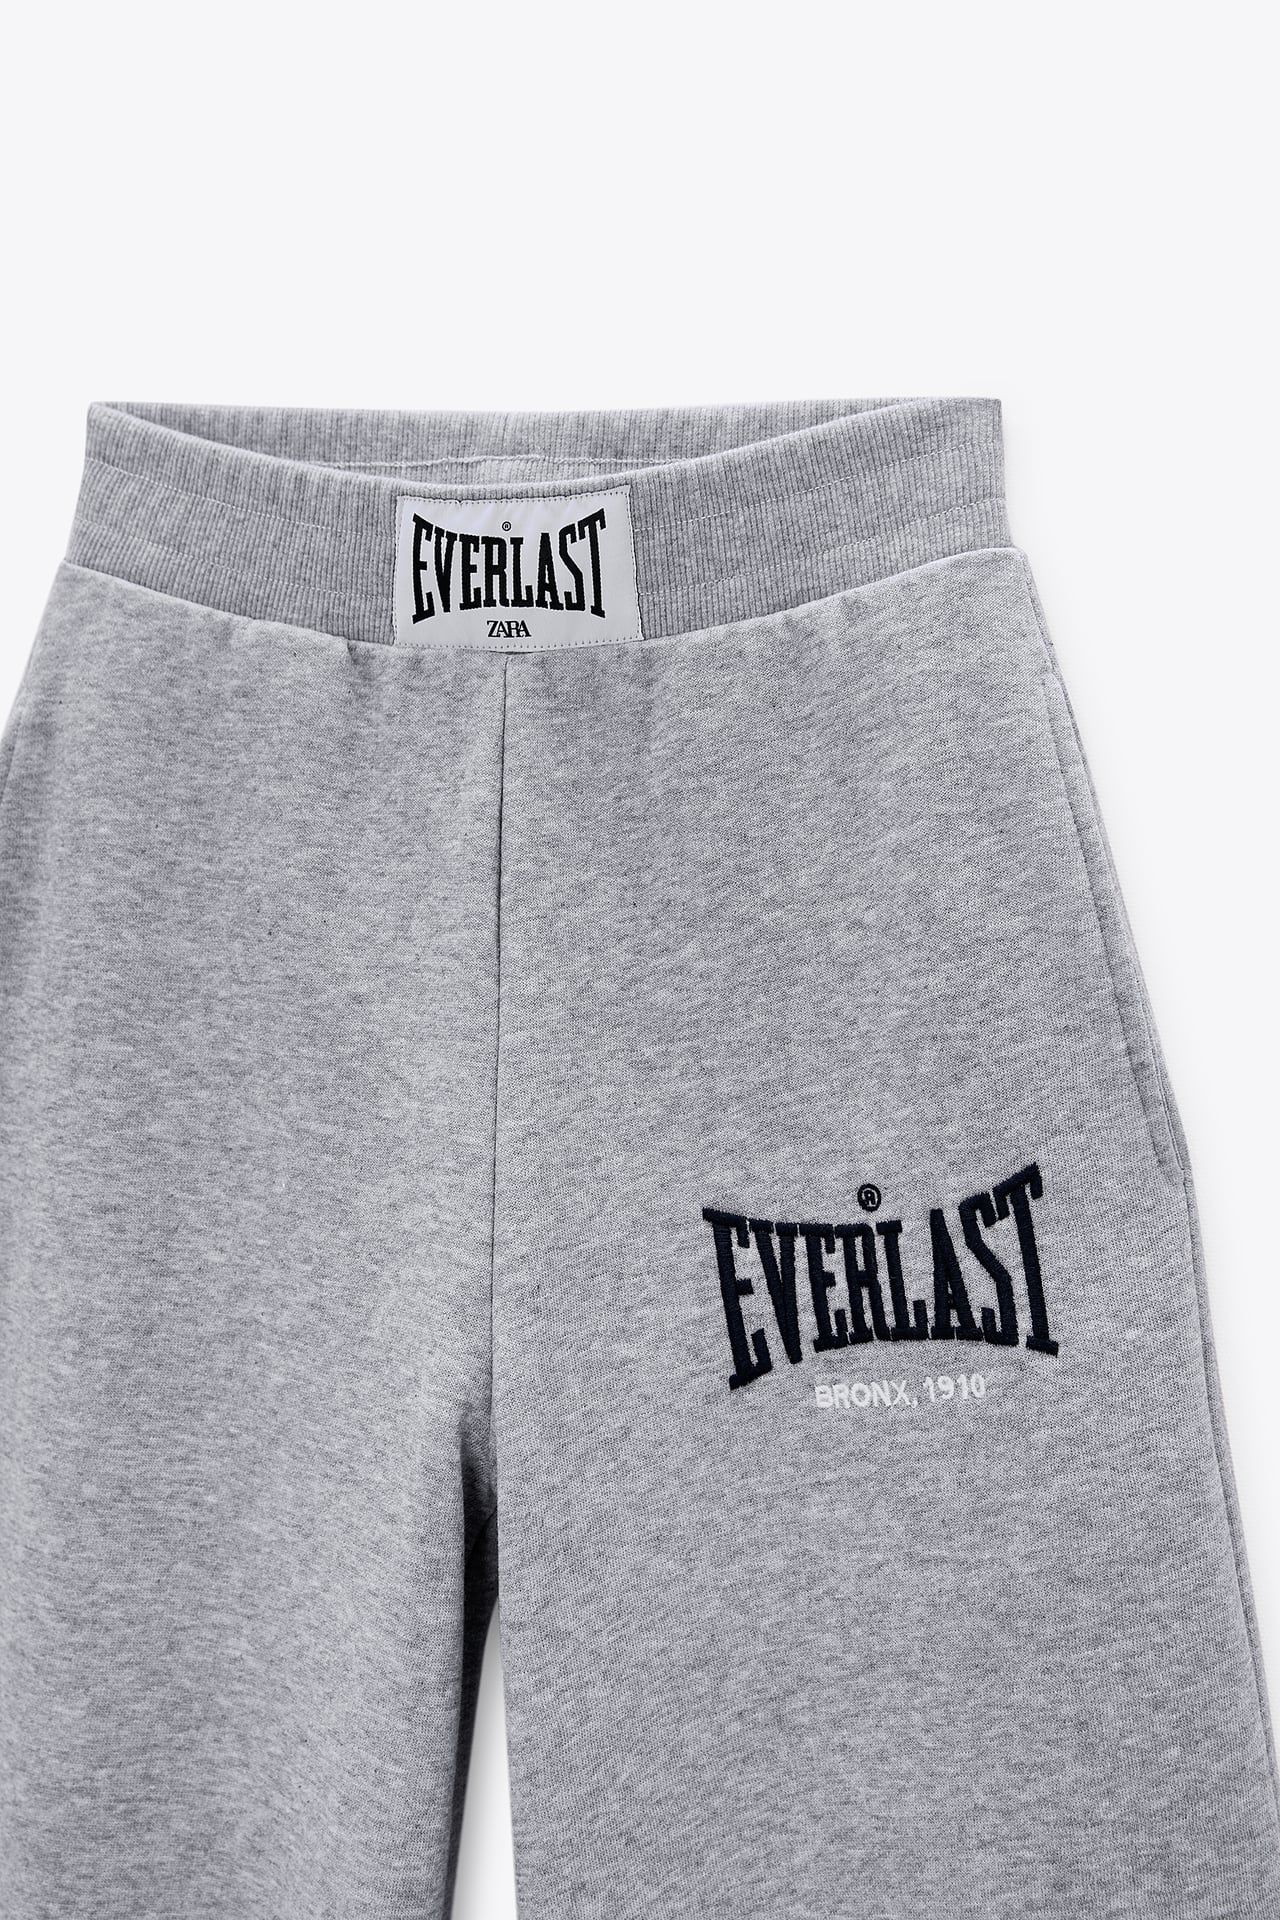 Las mejores ofertas en Pantalones de ejercicio Everlast para Mujeres